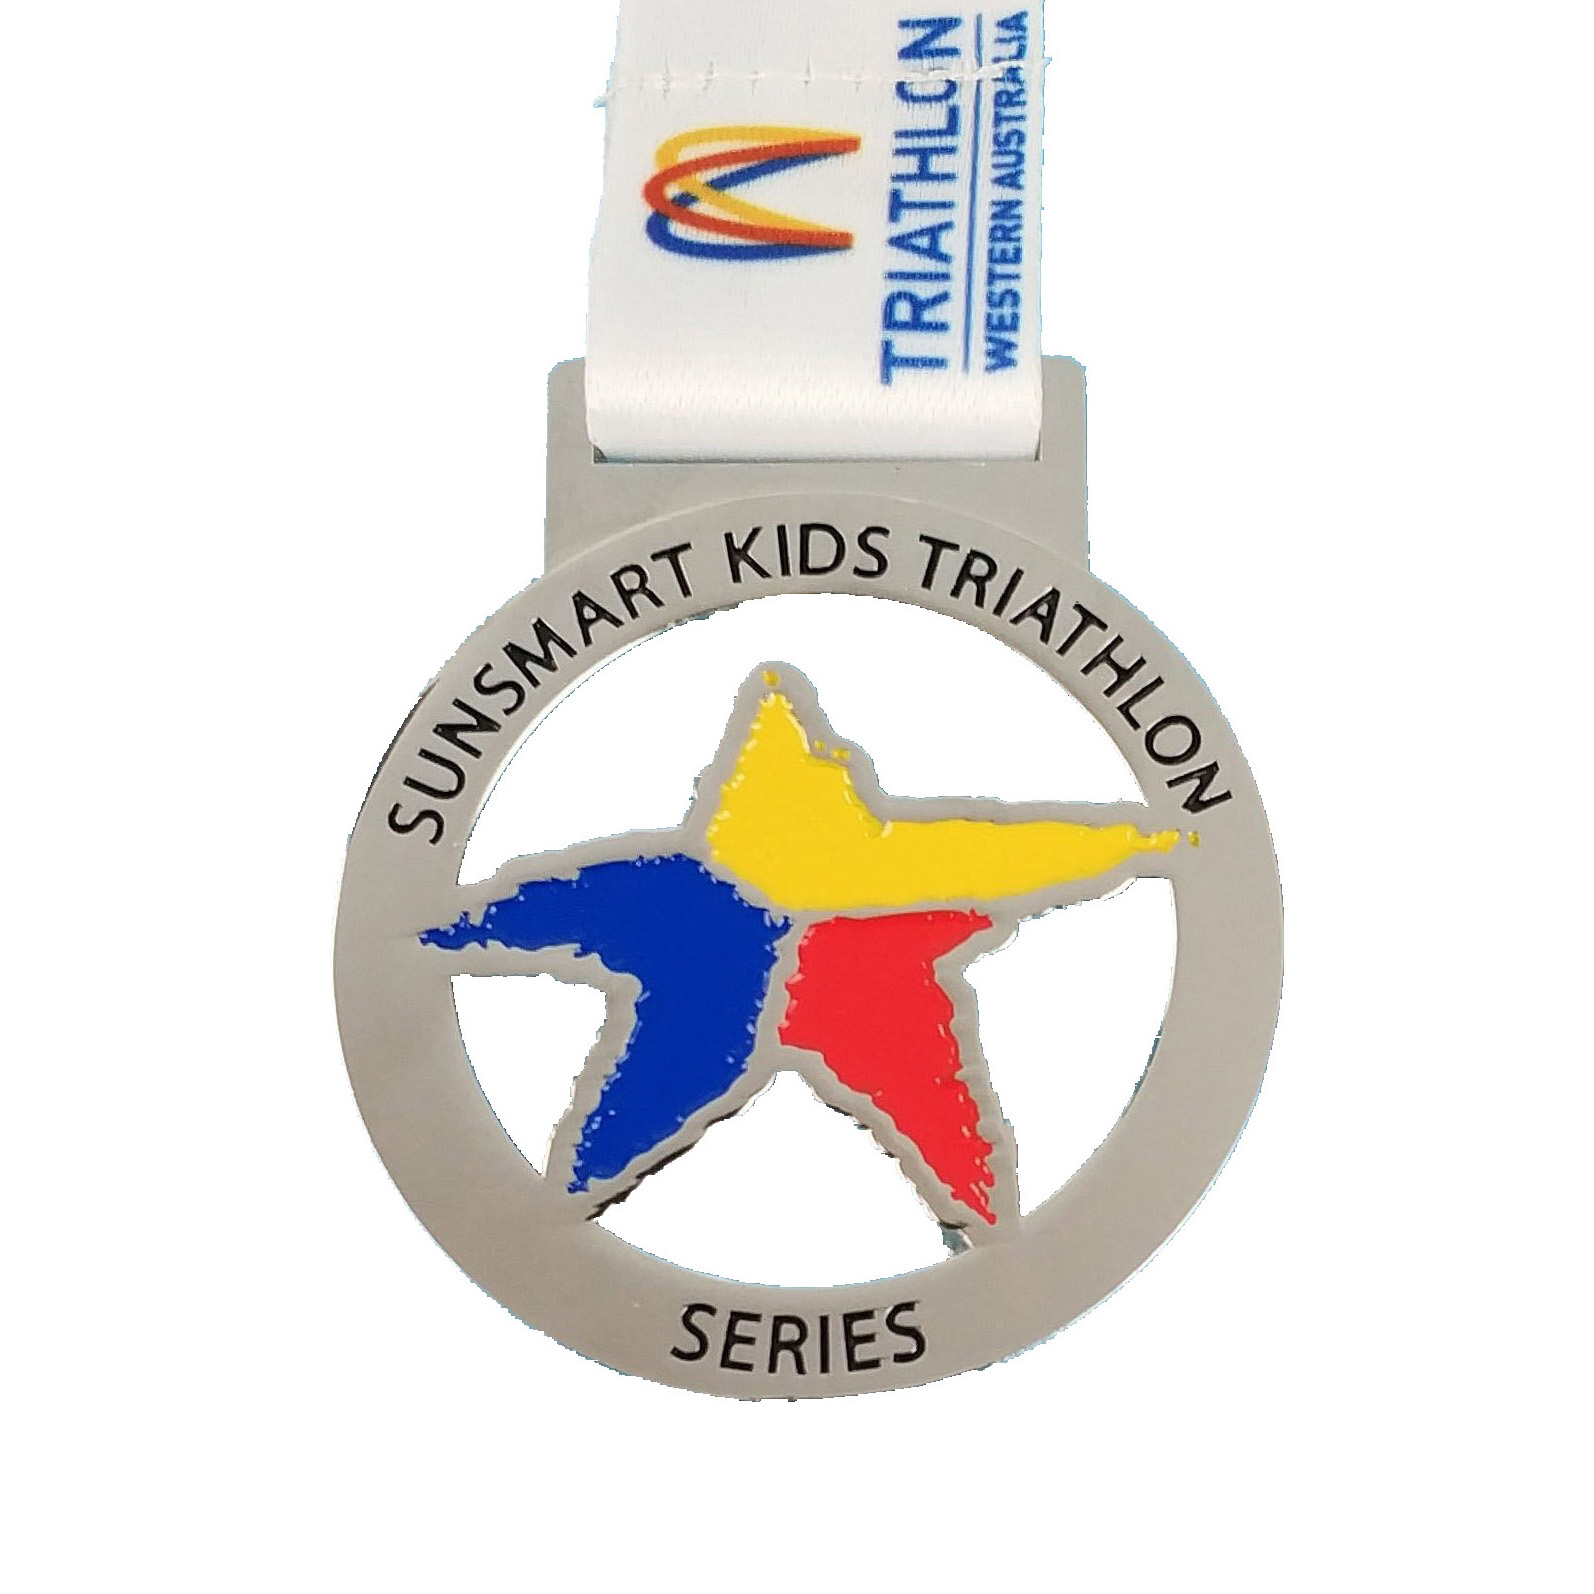 Seriemedalje for triatlon for børn